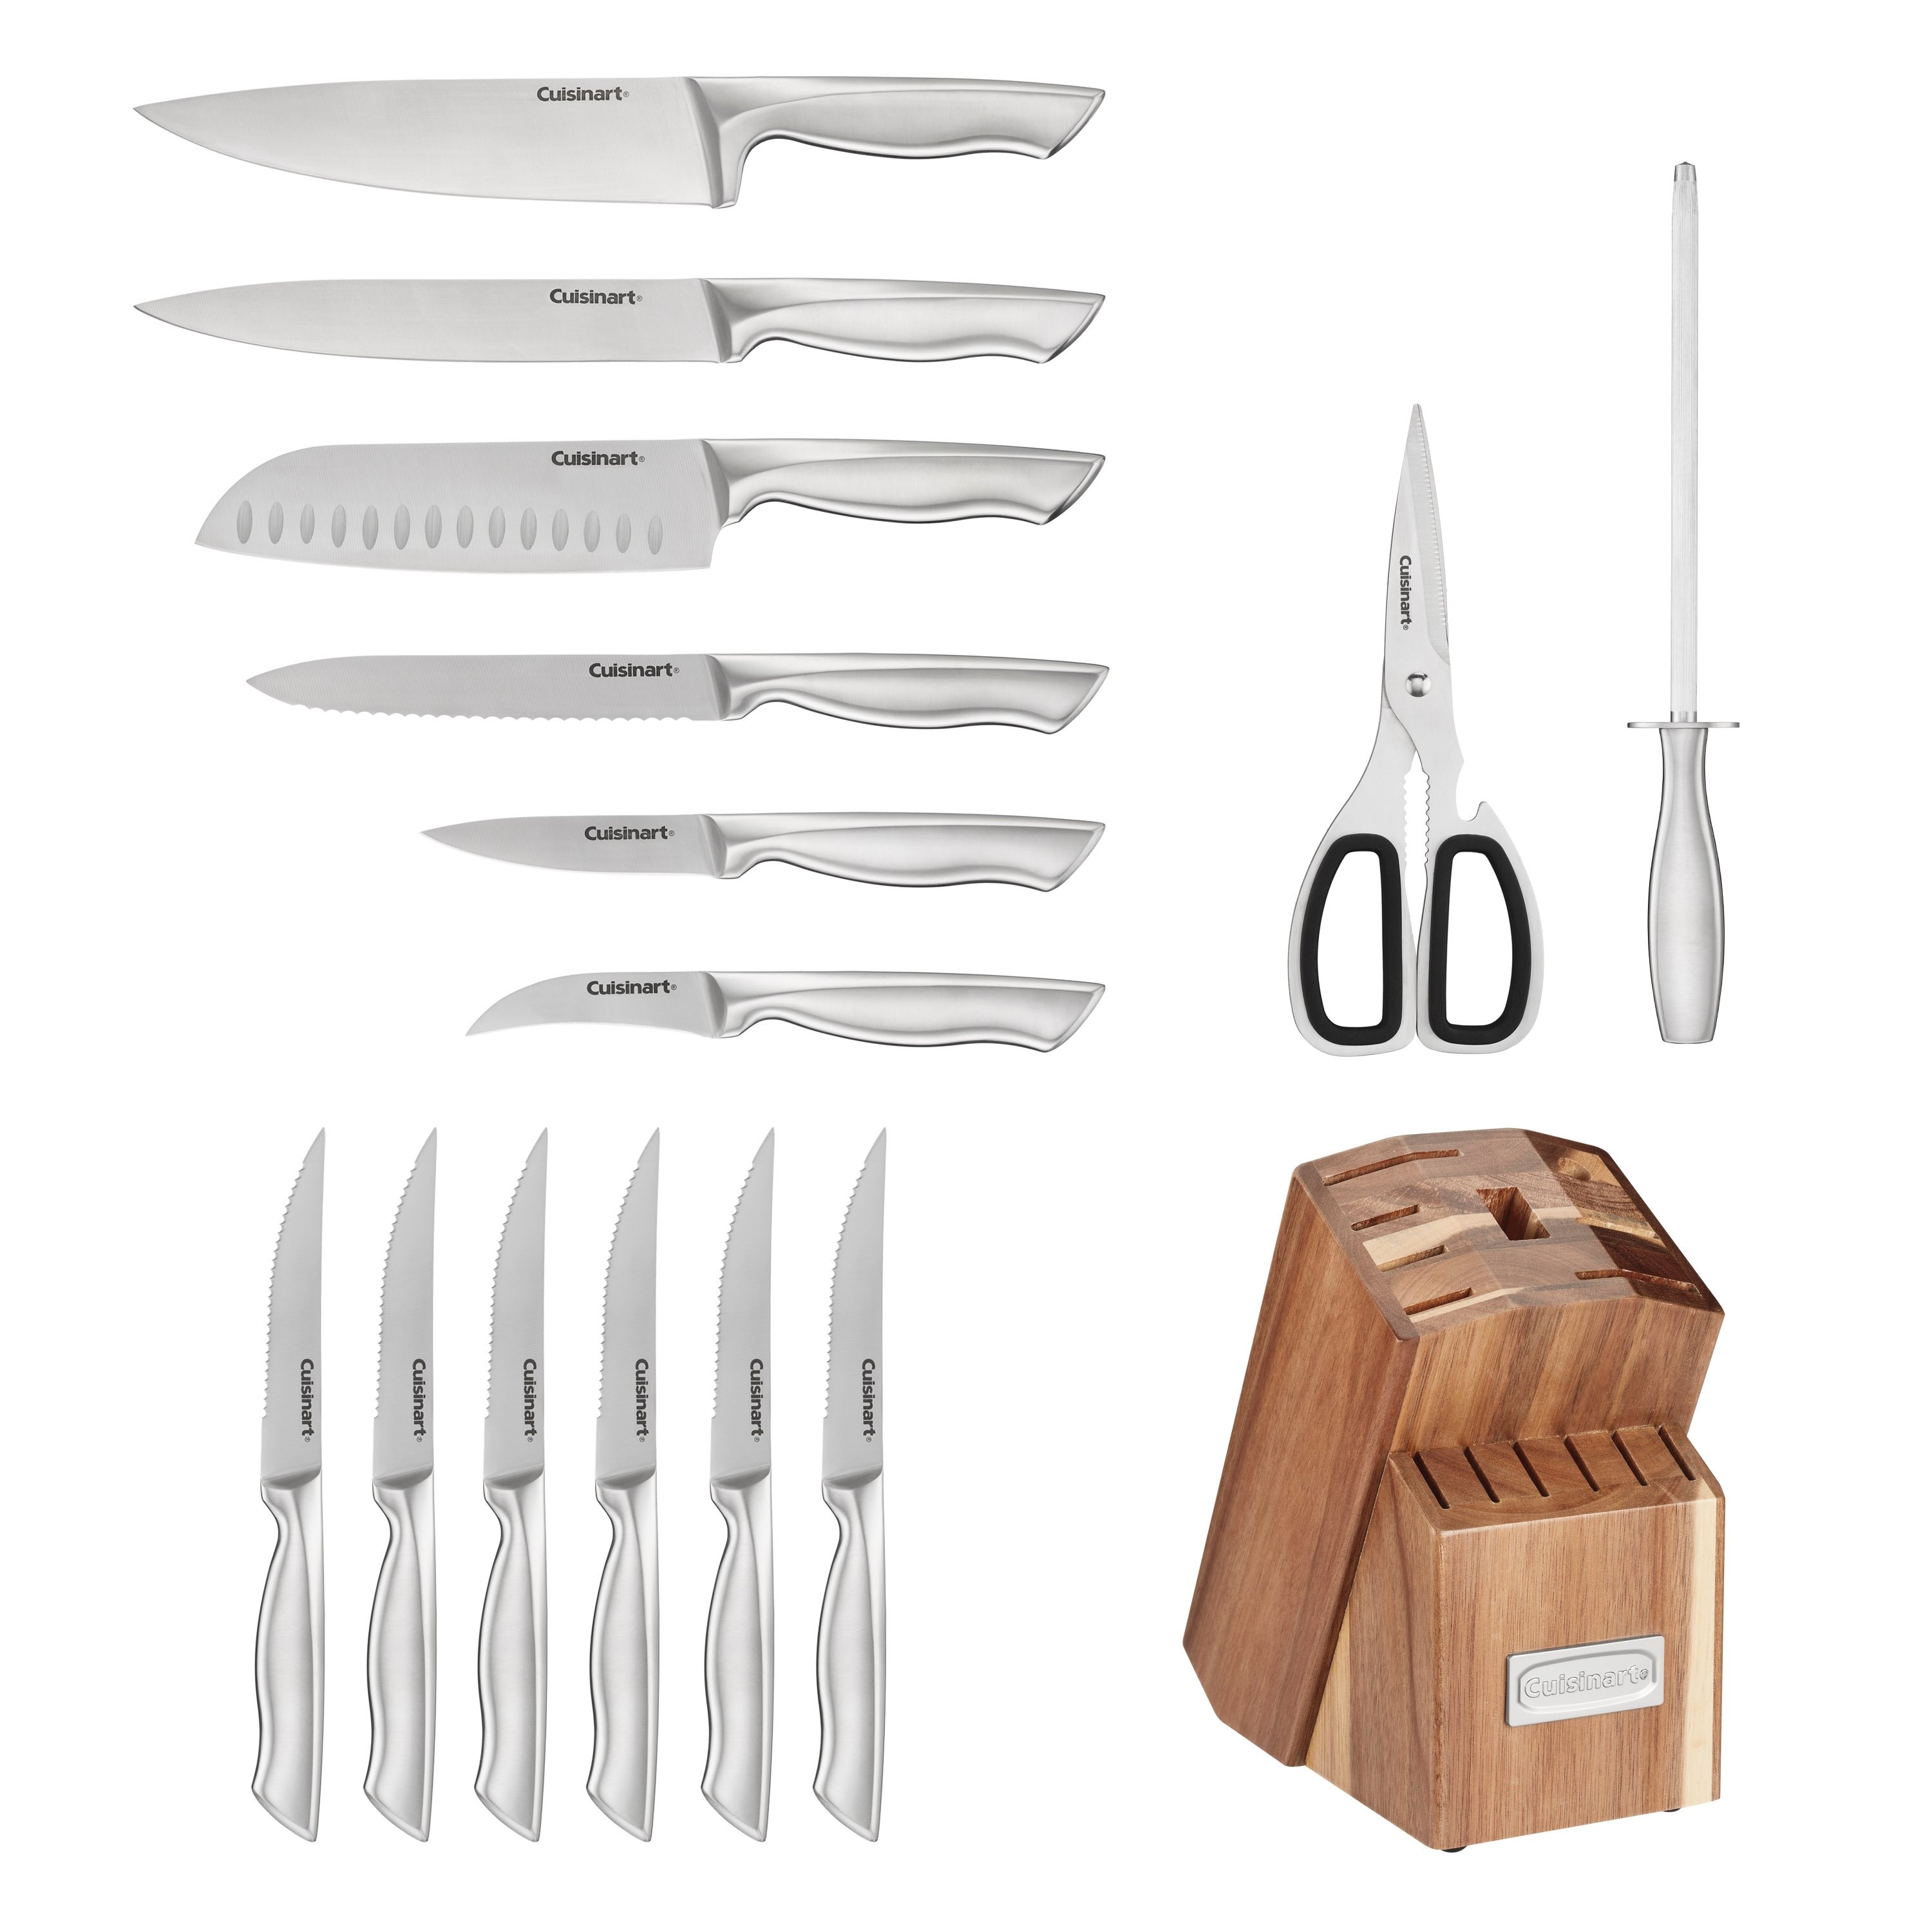 Cuisinart 15 Piece Knife Block Set & Reviews